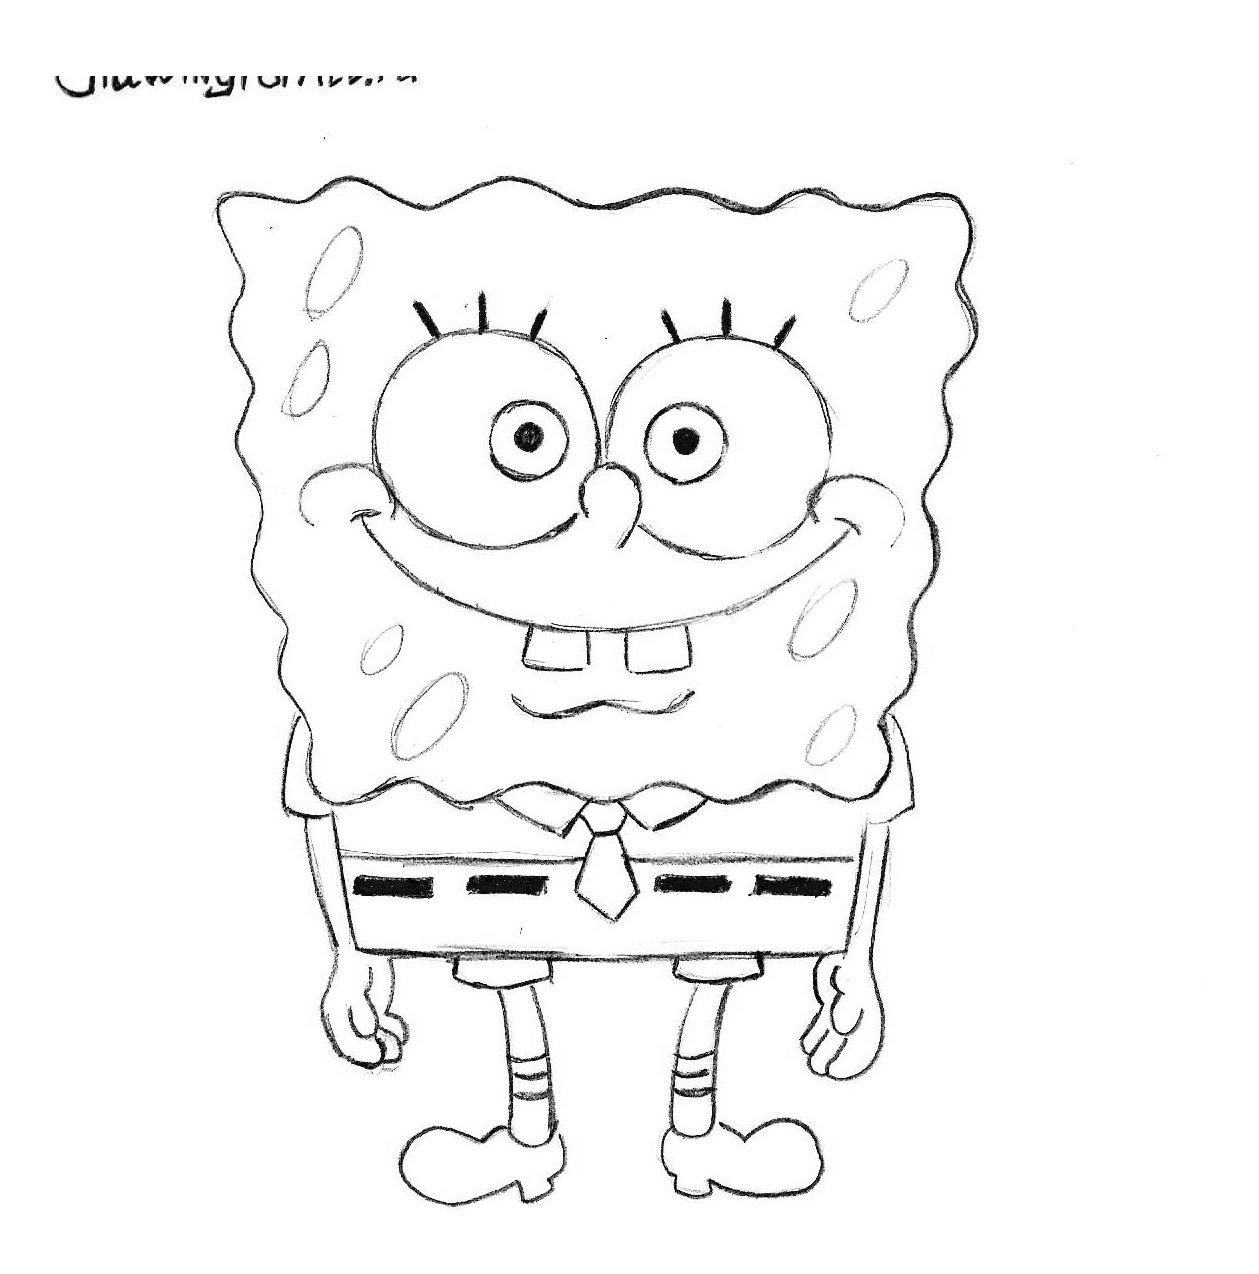 How to Draw Spongebob